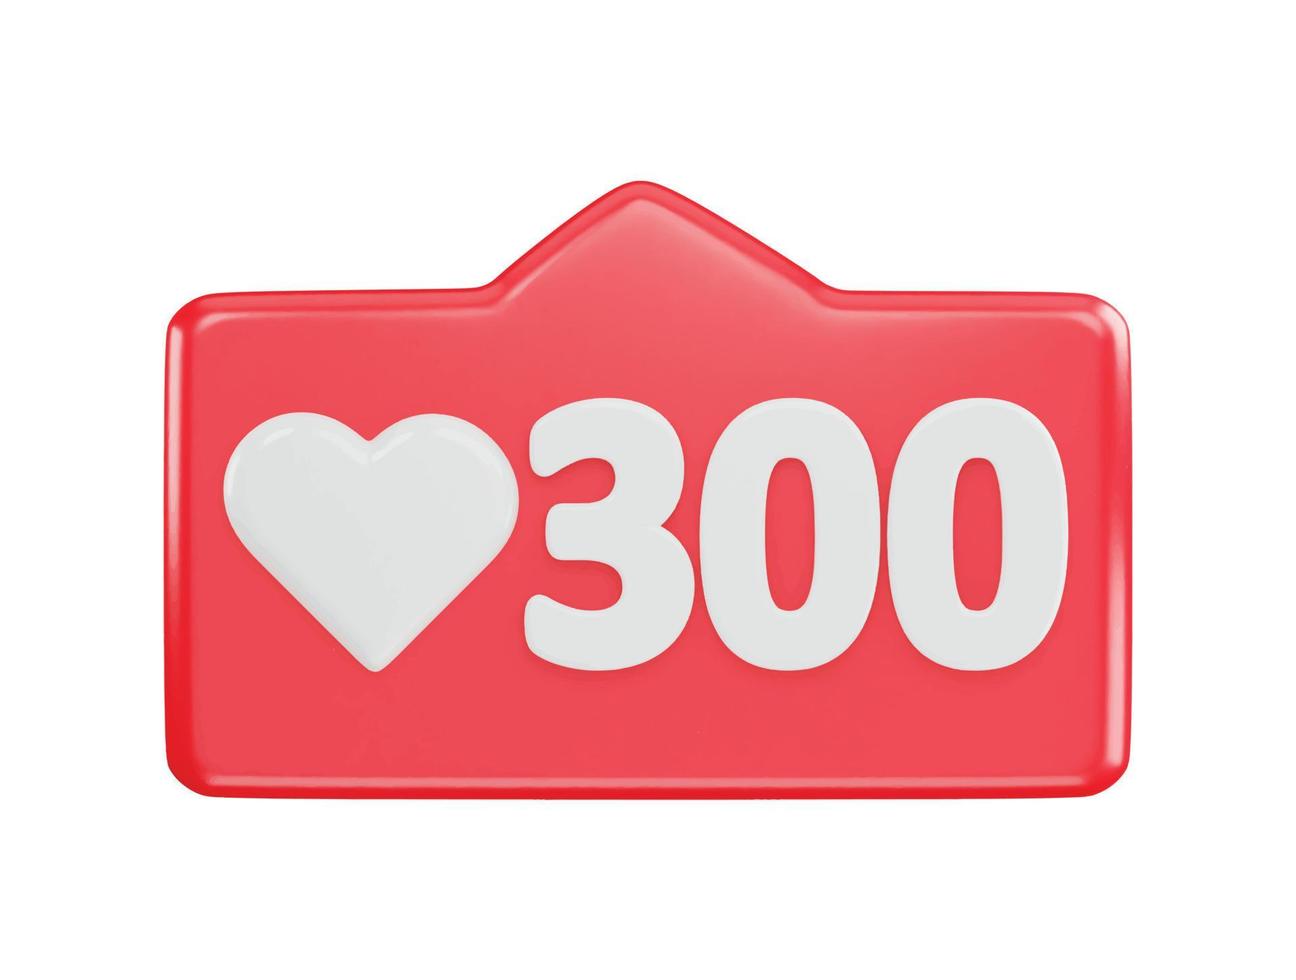 300 social media love react icon 3d rendering vector illustration